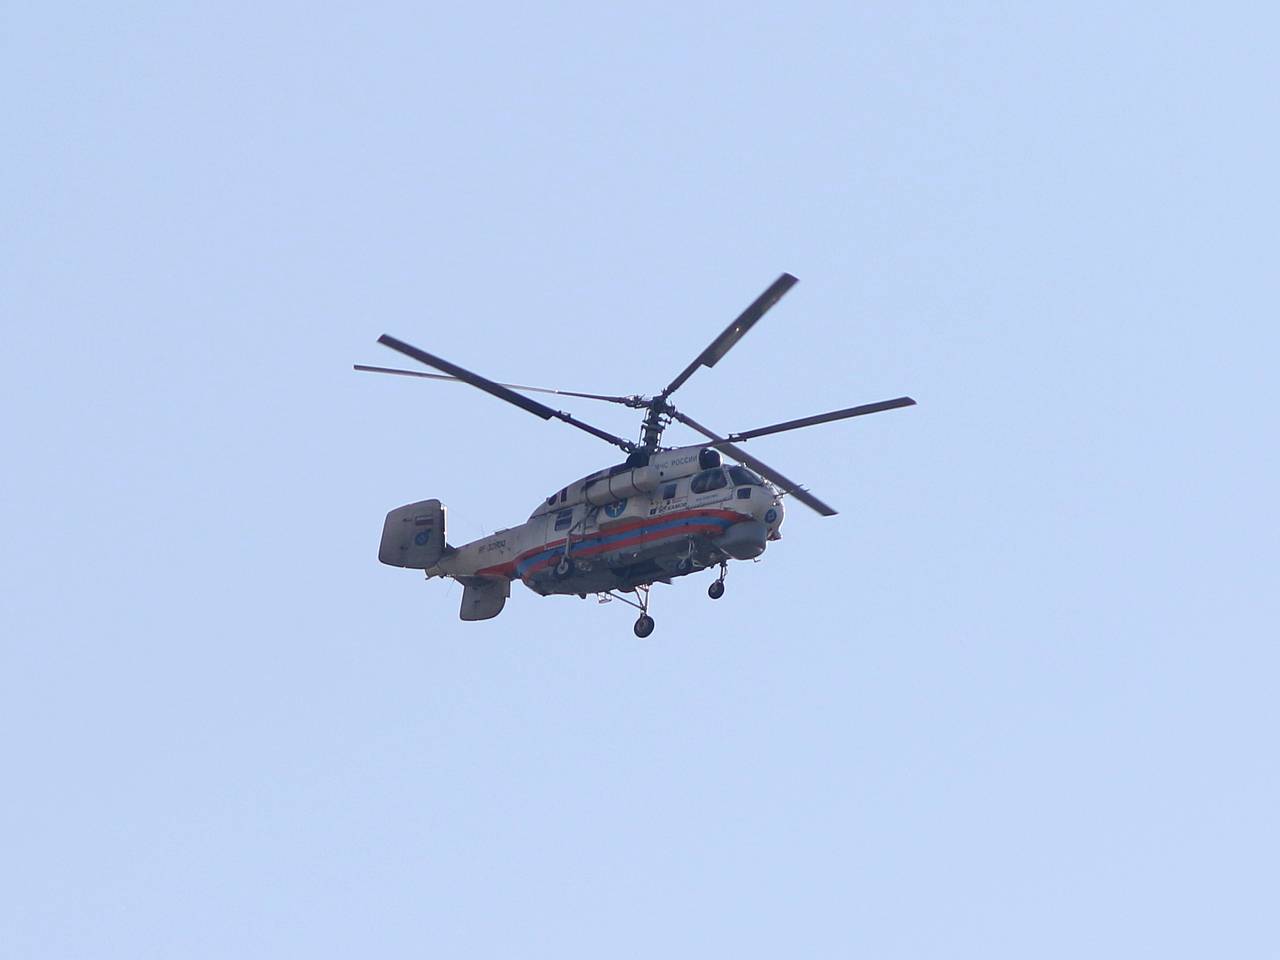 РУ вертолет Syma S026 S026G, 3-канальный, гироскоп